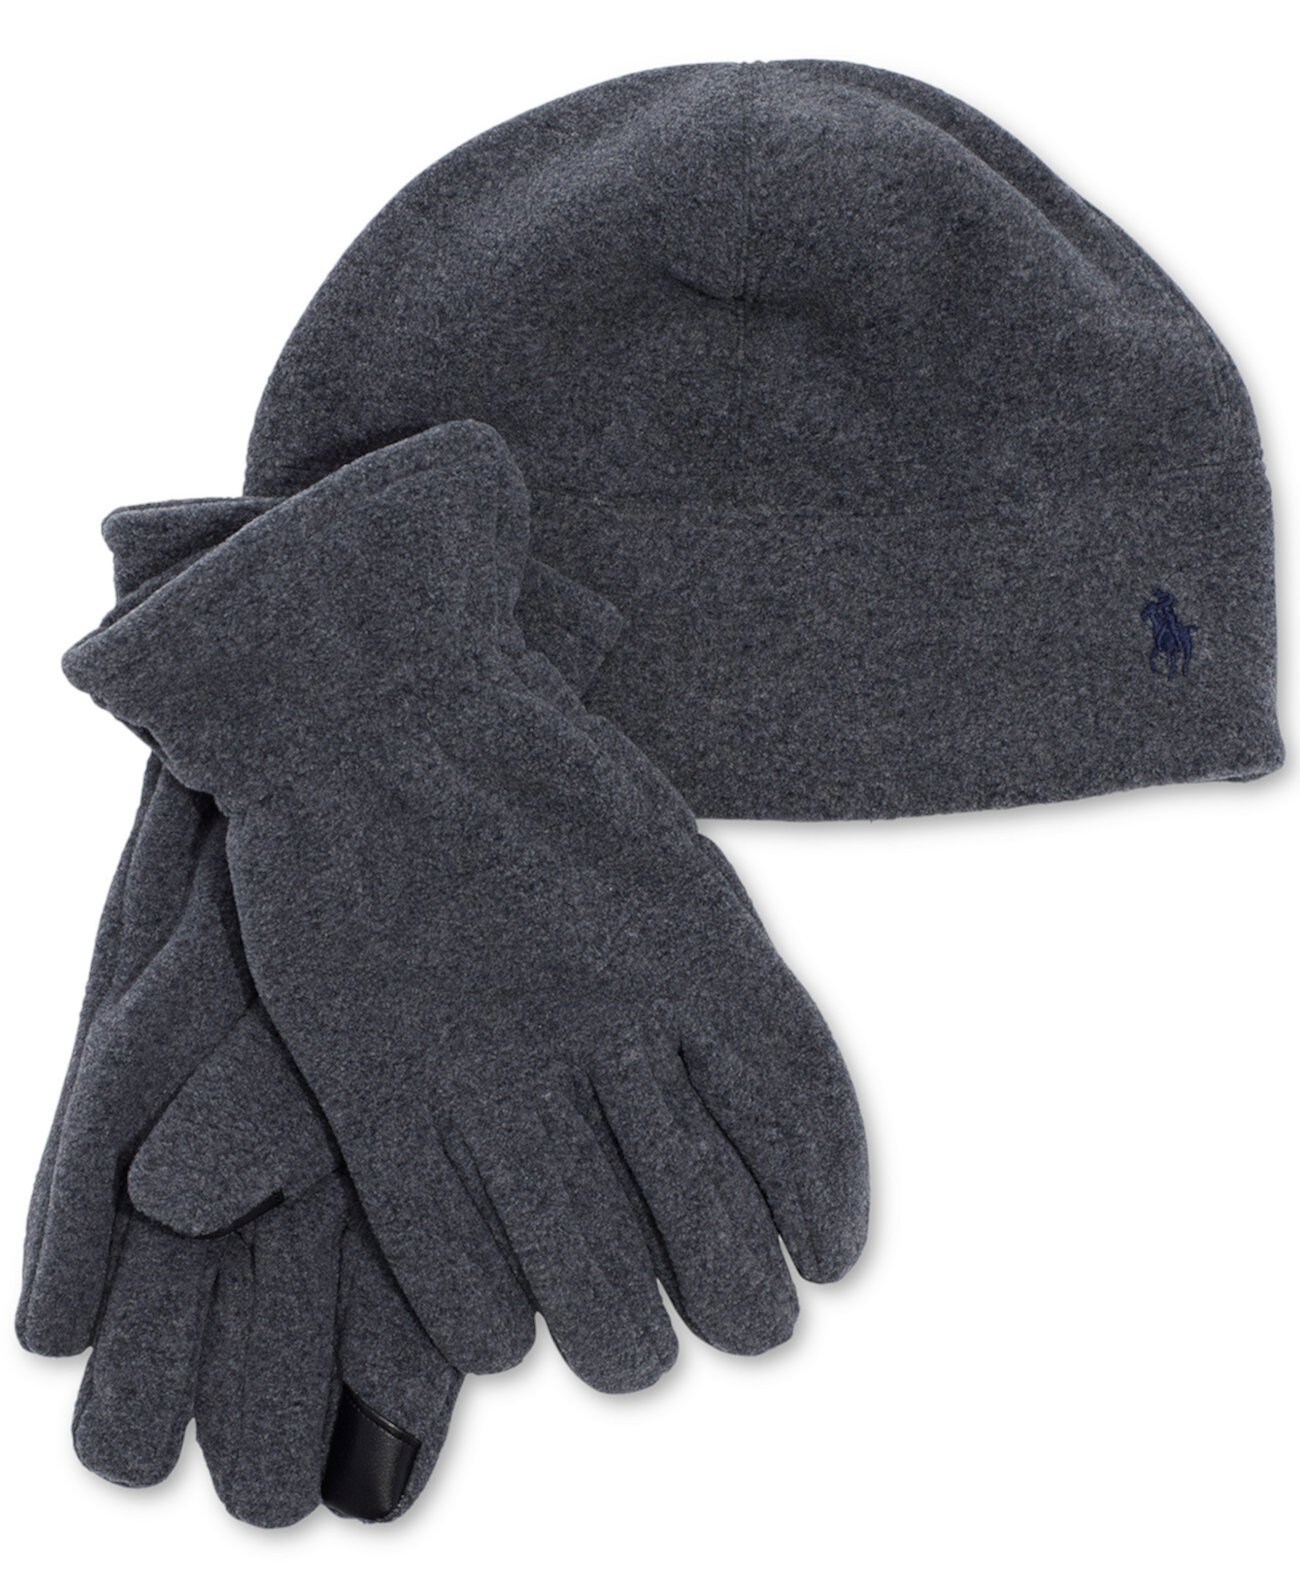 Комплект мужской флисовой шапки и перчаток Polartec Ralph Lauren